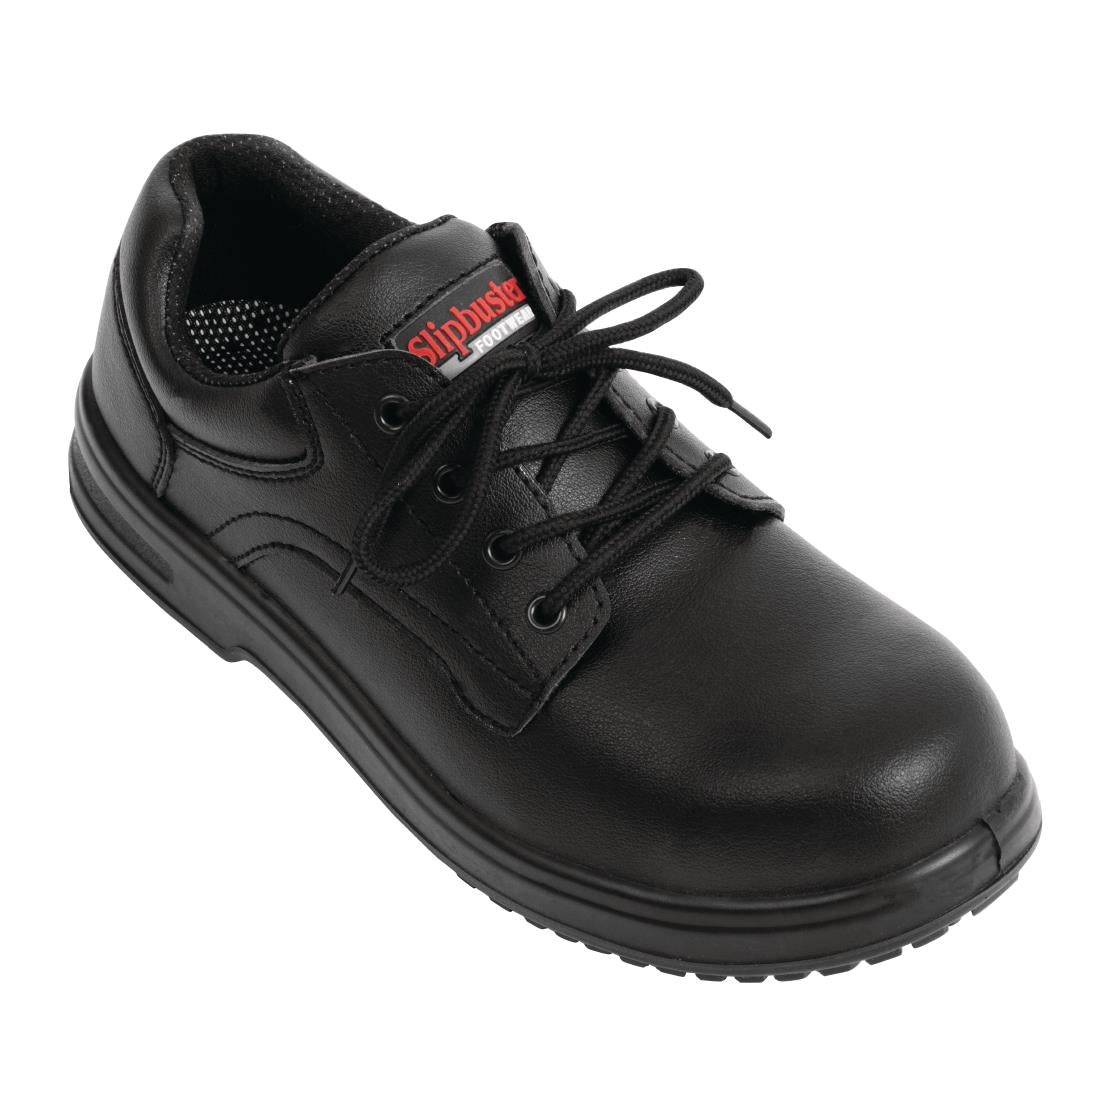 Slipbuster Footwear Slipbuster Basic Slip Resistant - Size 47